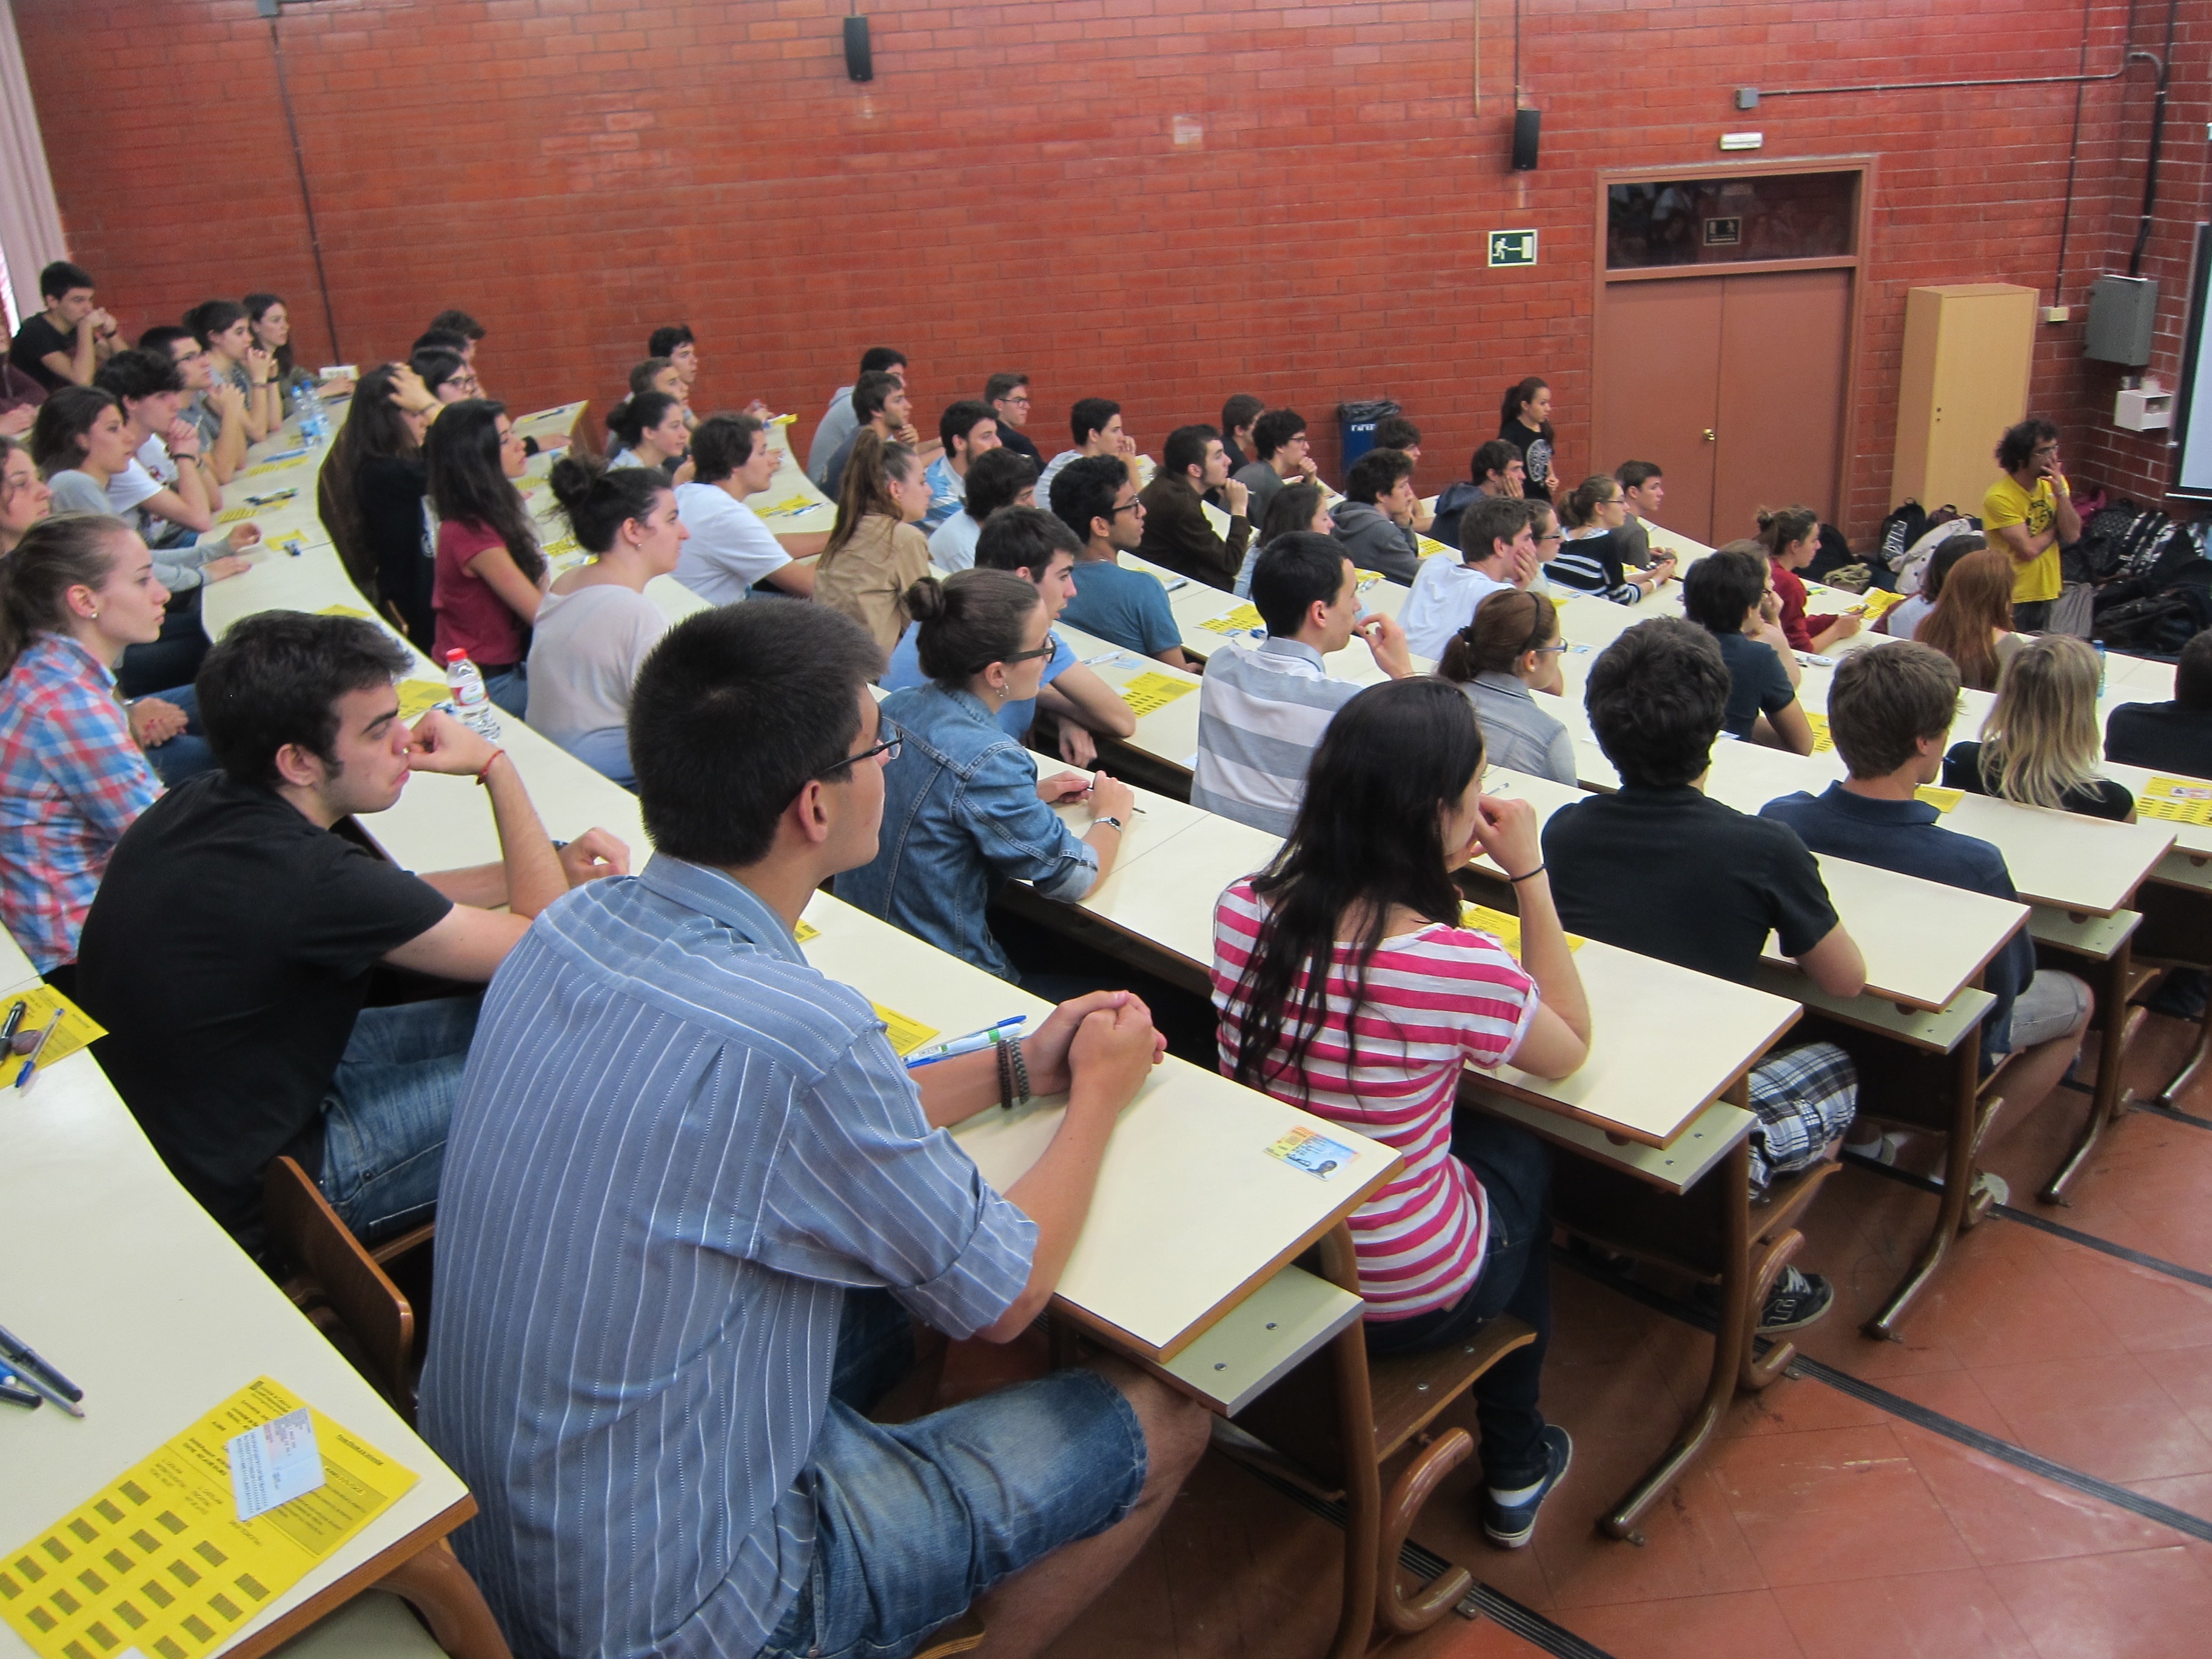 Los estudiantes españoles prefieren estudiar en España aunque tengan menos oportunidades